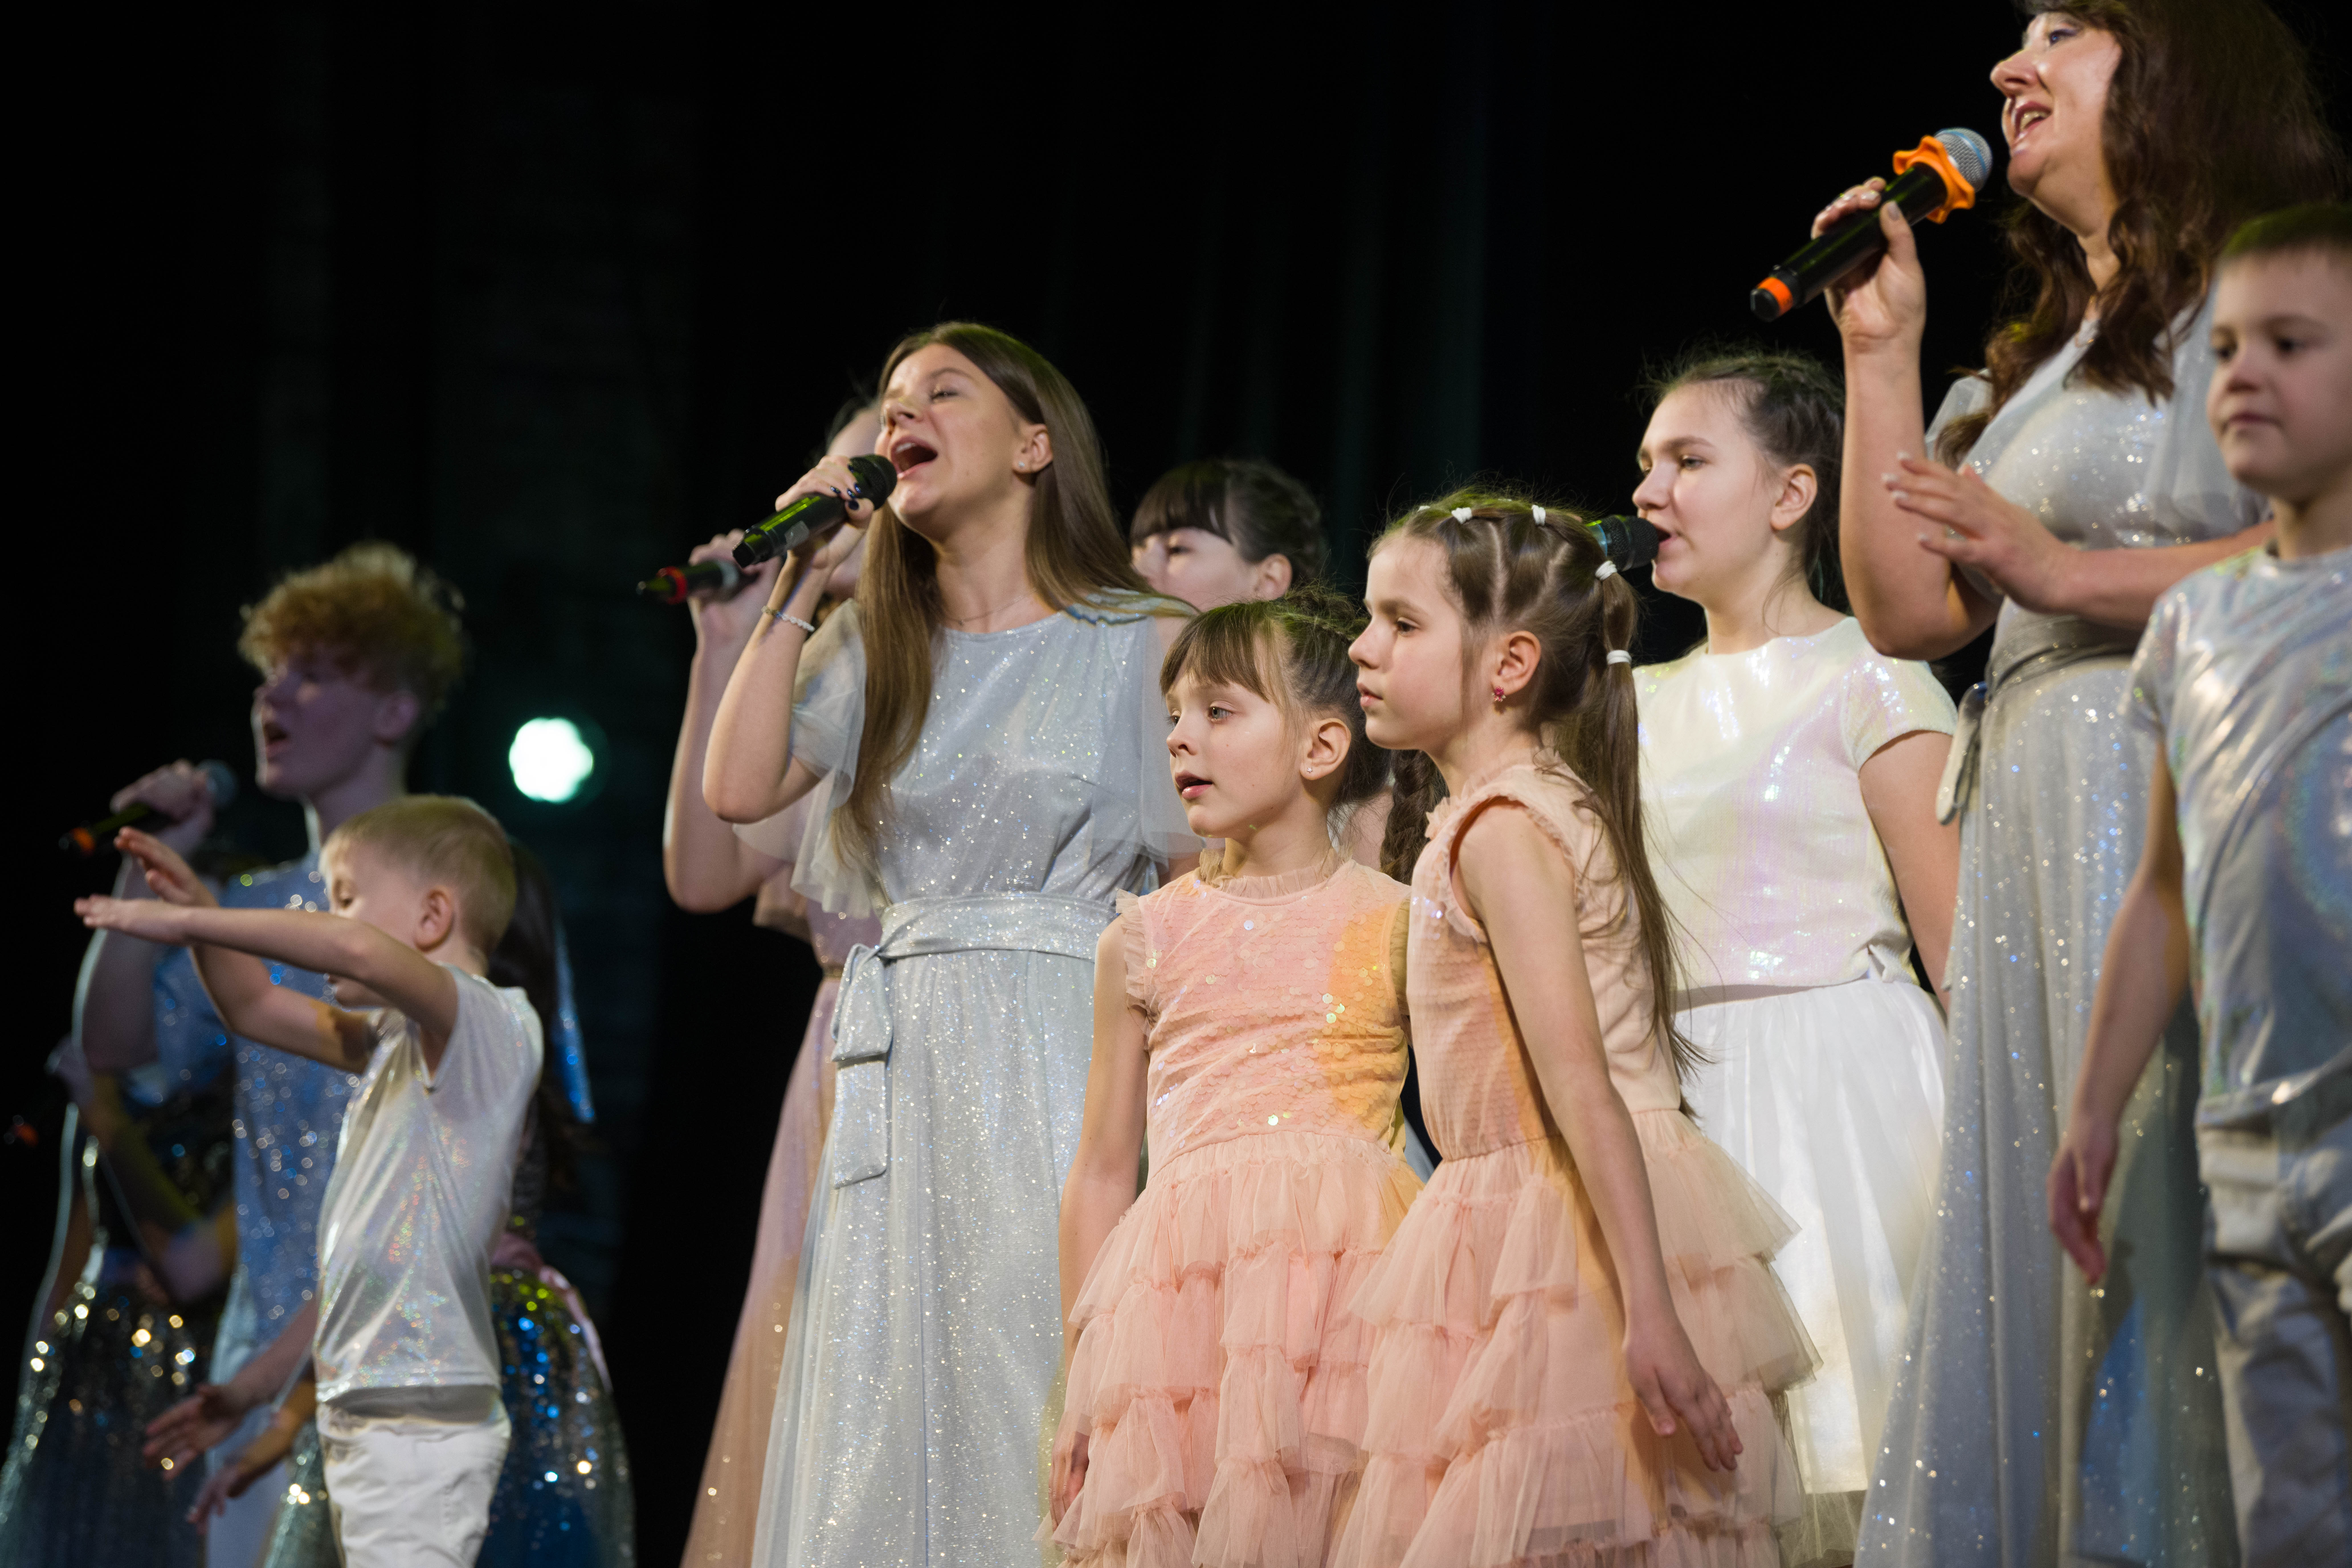 Музыкальный фестиваль "Рождественский мост дружбы" объединил талантливых детей из Донбасса и Ленинградской области